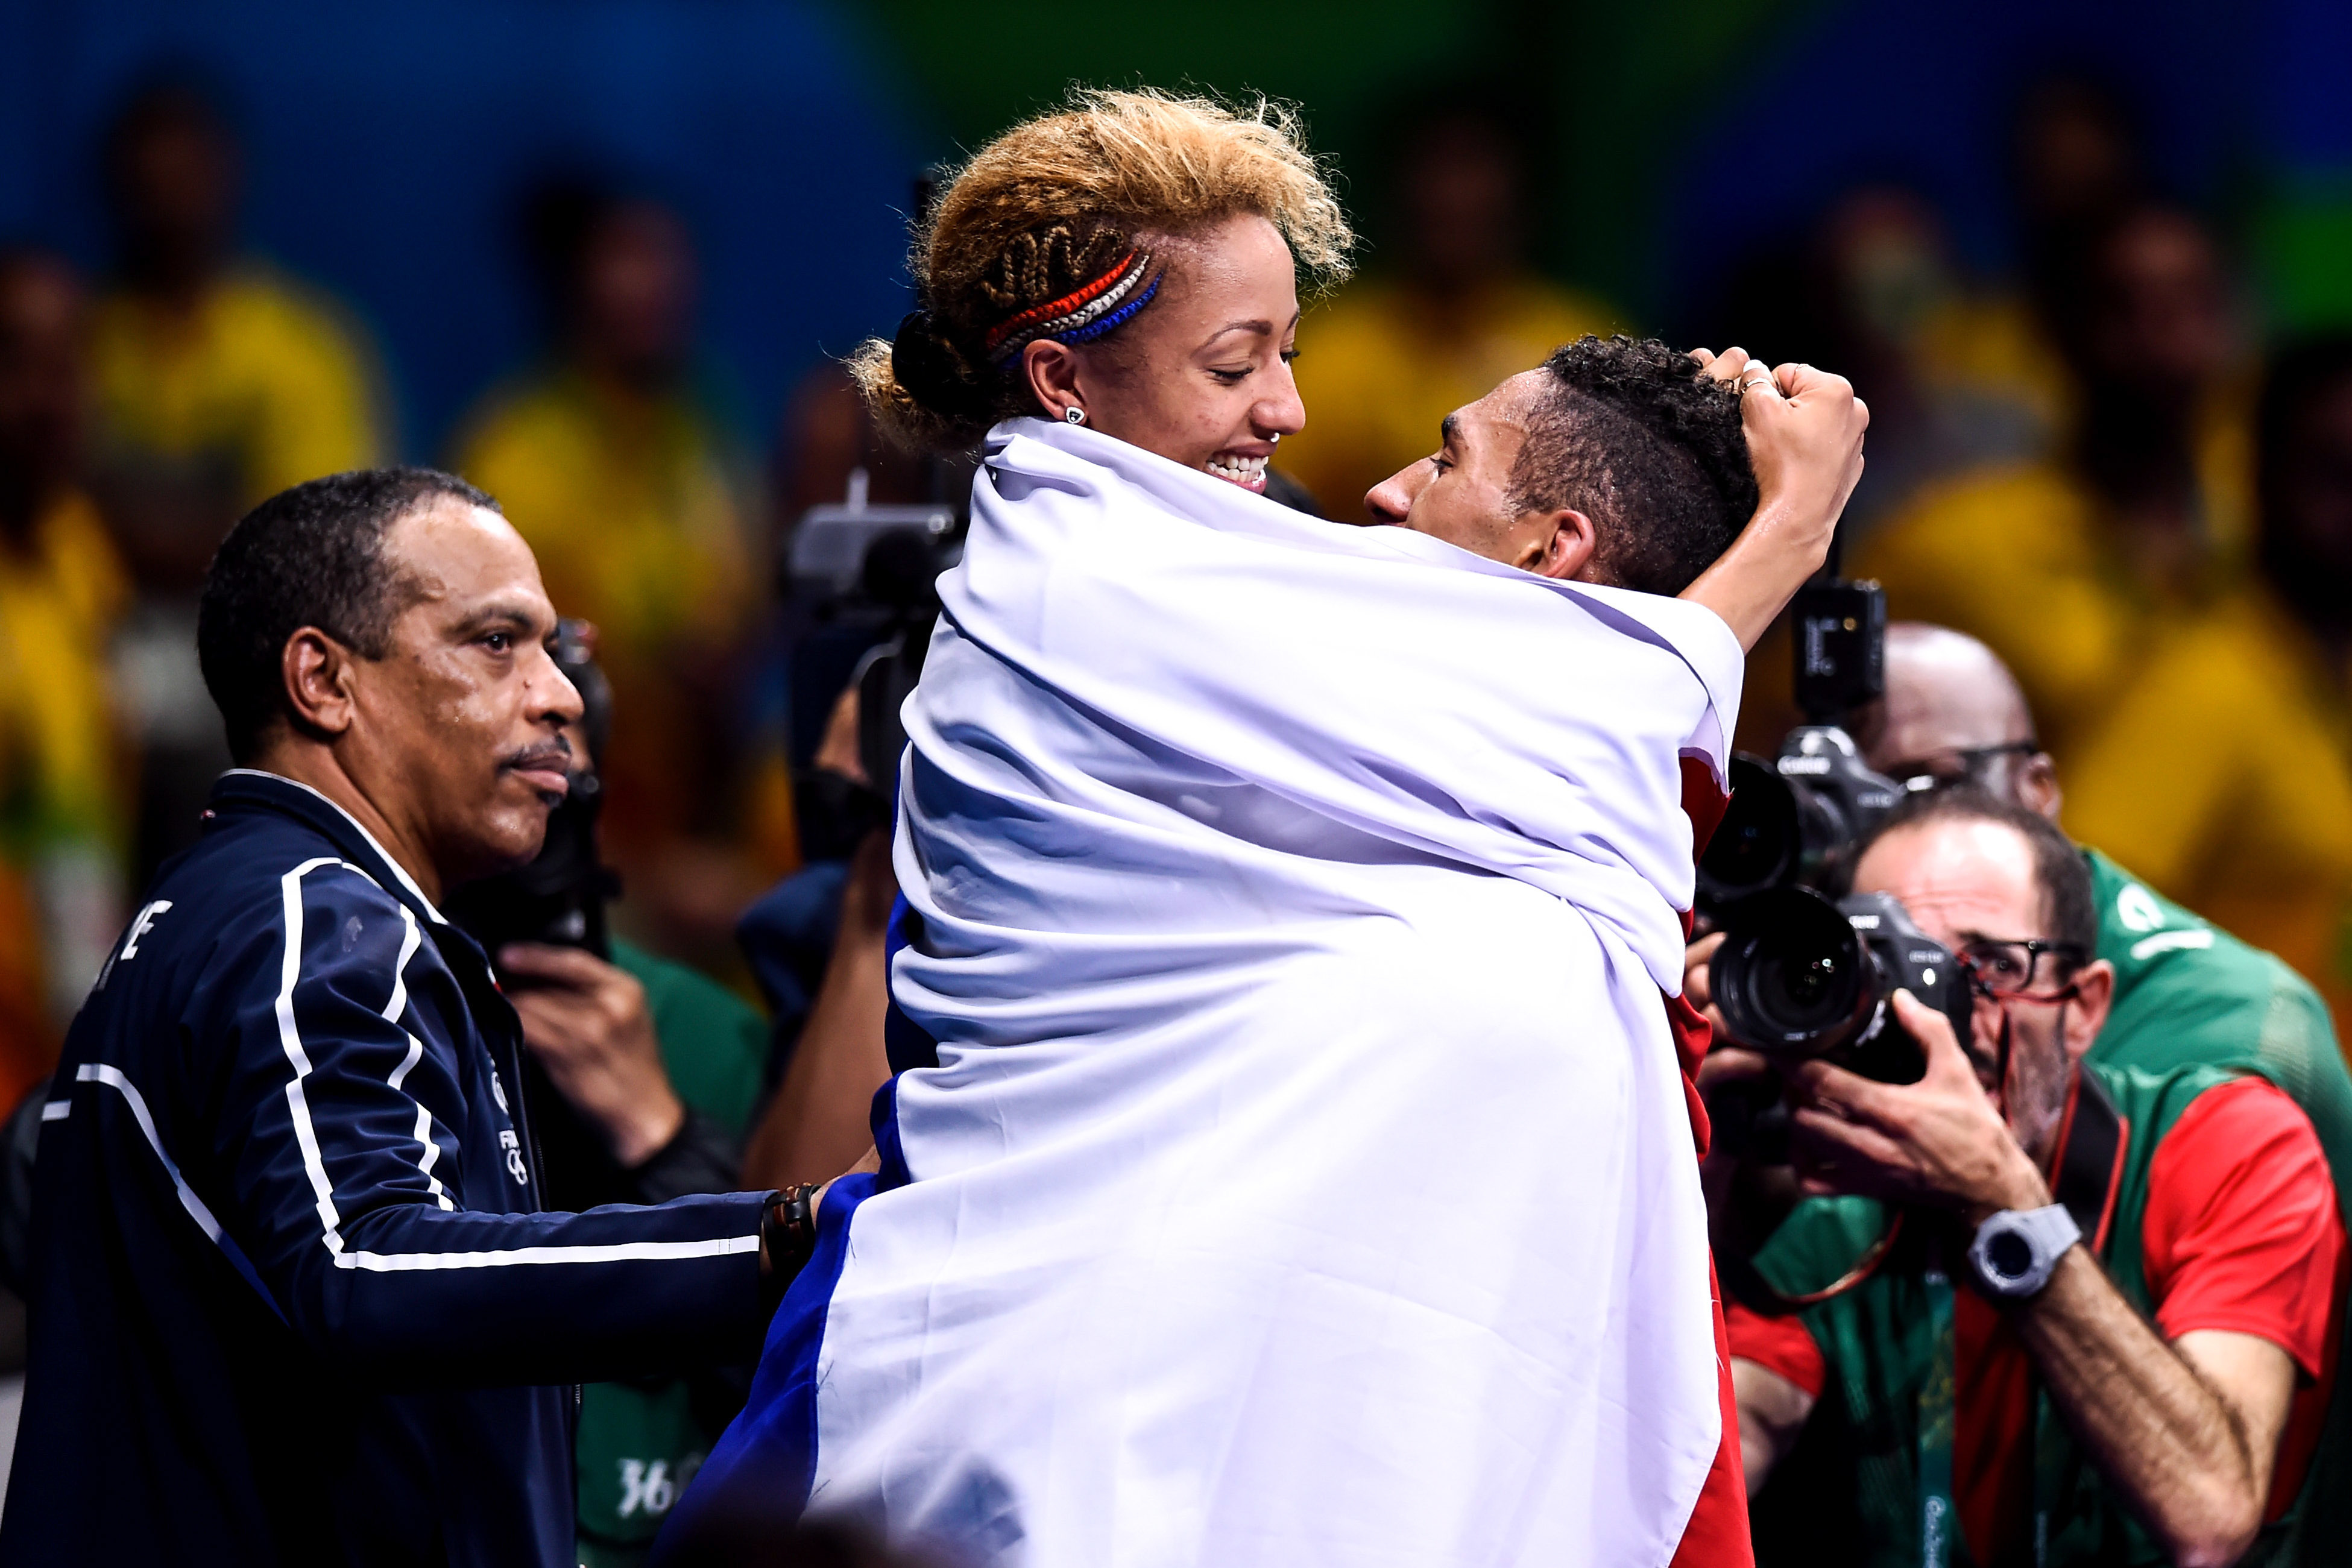 Deux jours après son sacre chez les moins de 60 kg, la boxeuse Estelle Mossely retrouve Tony Yoka, champion olympique à son tour chez les plus de 91 kg. Icon Sport